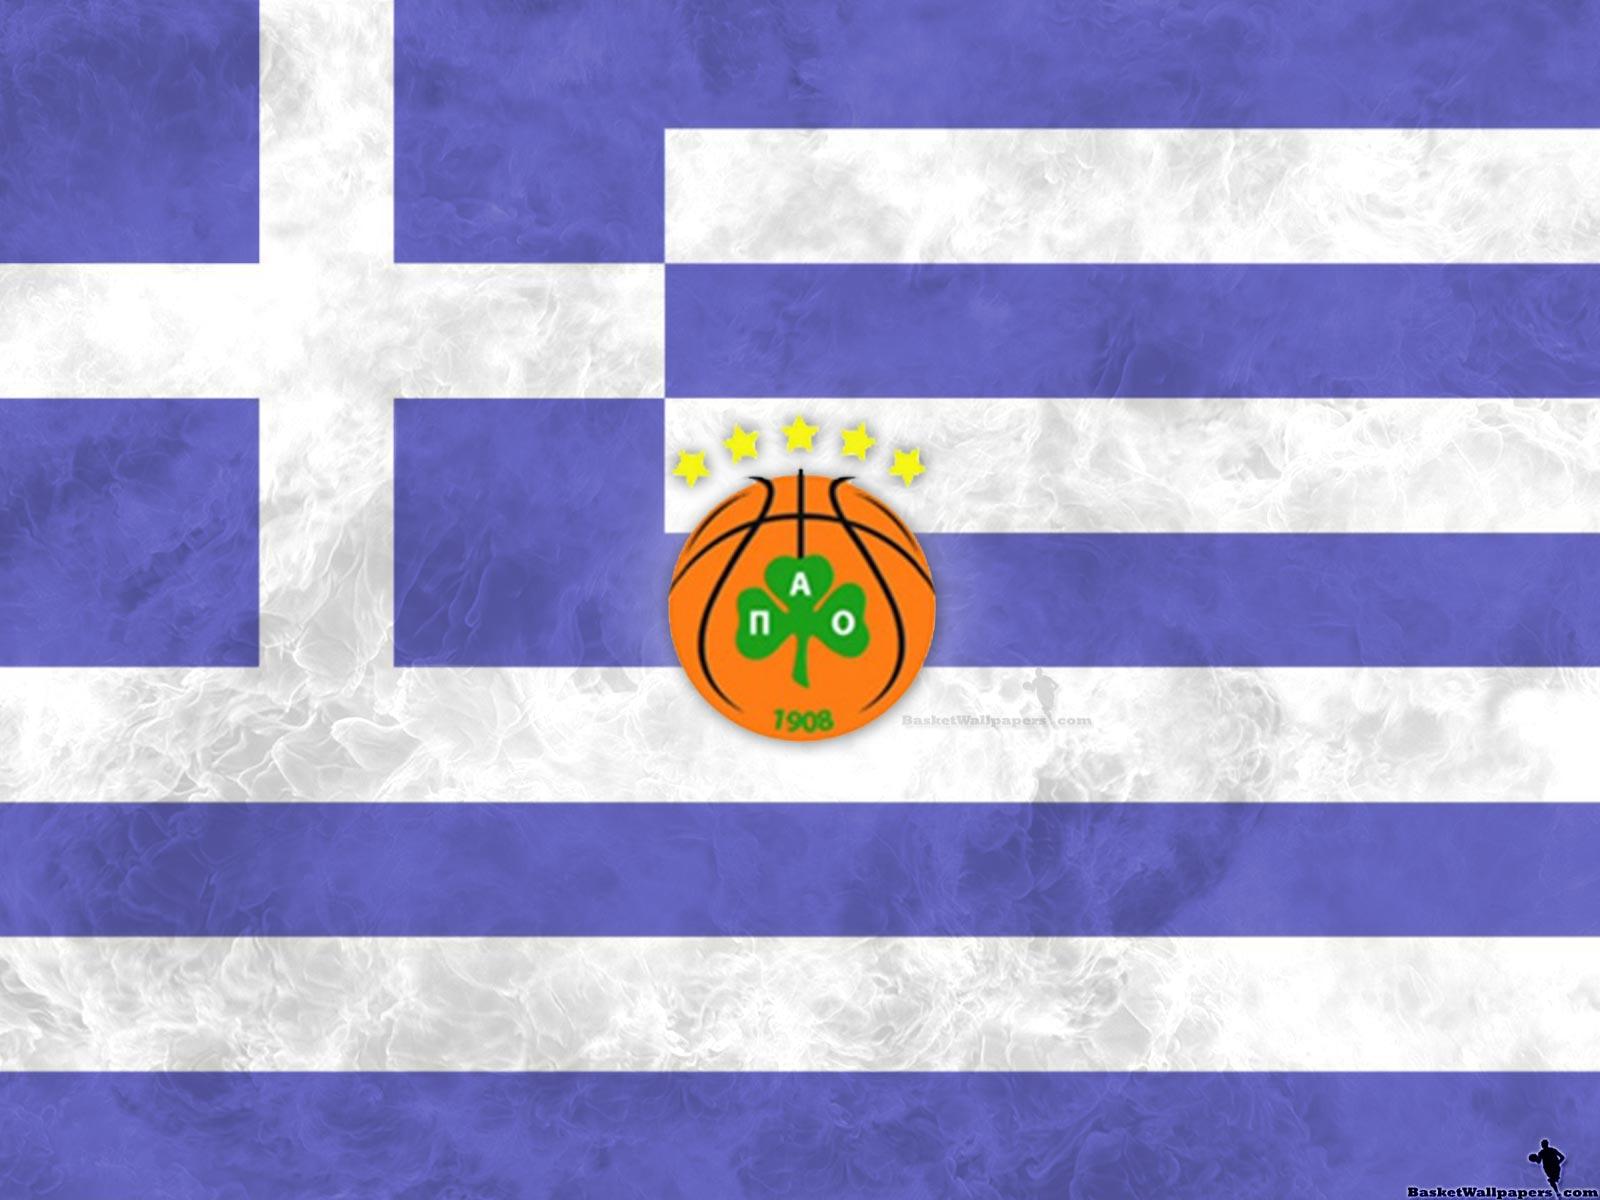 Panathinaikos Athens BC Wallpaper. Basketball Wallpaper at